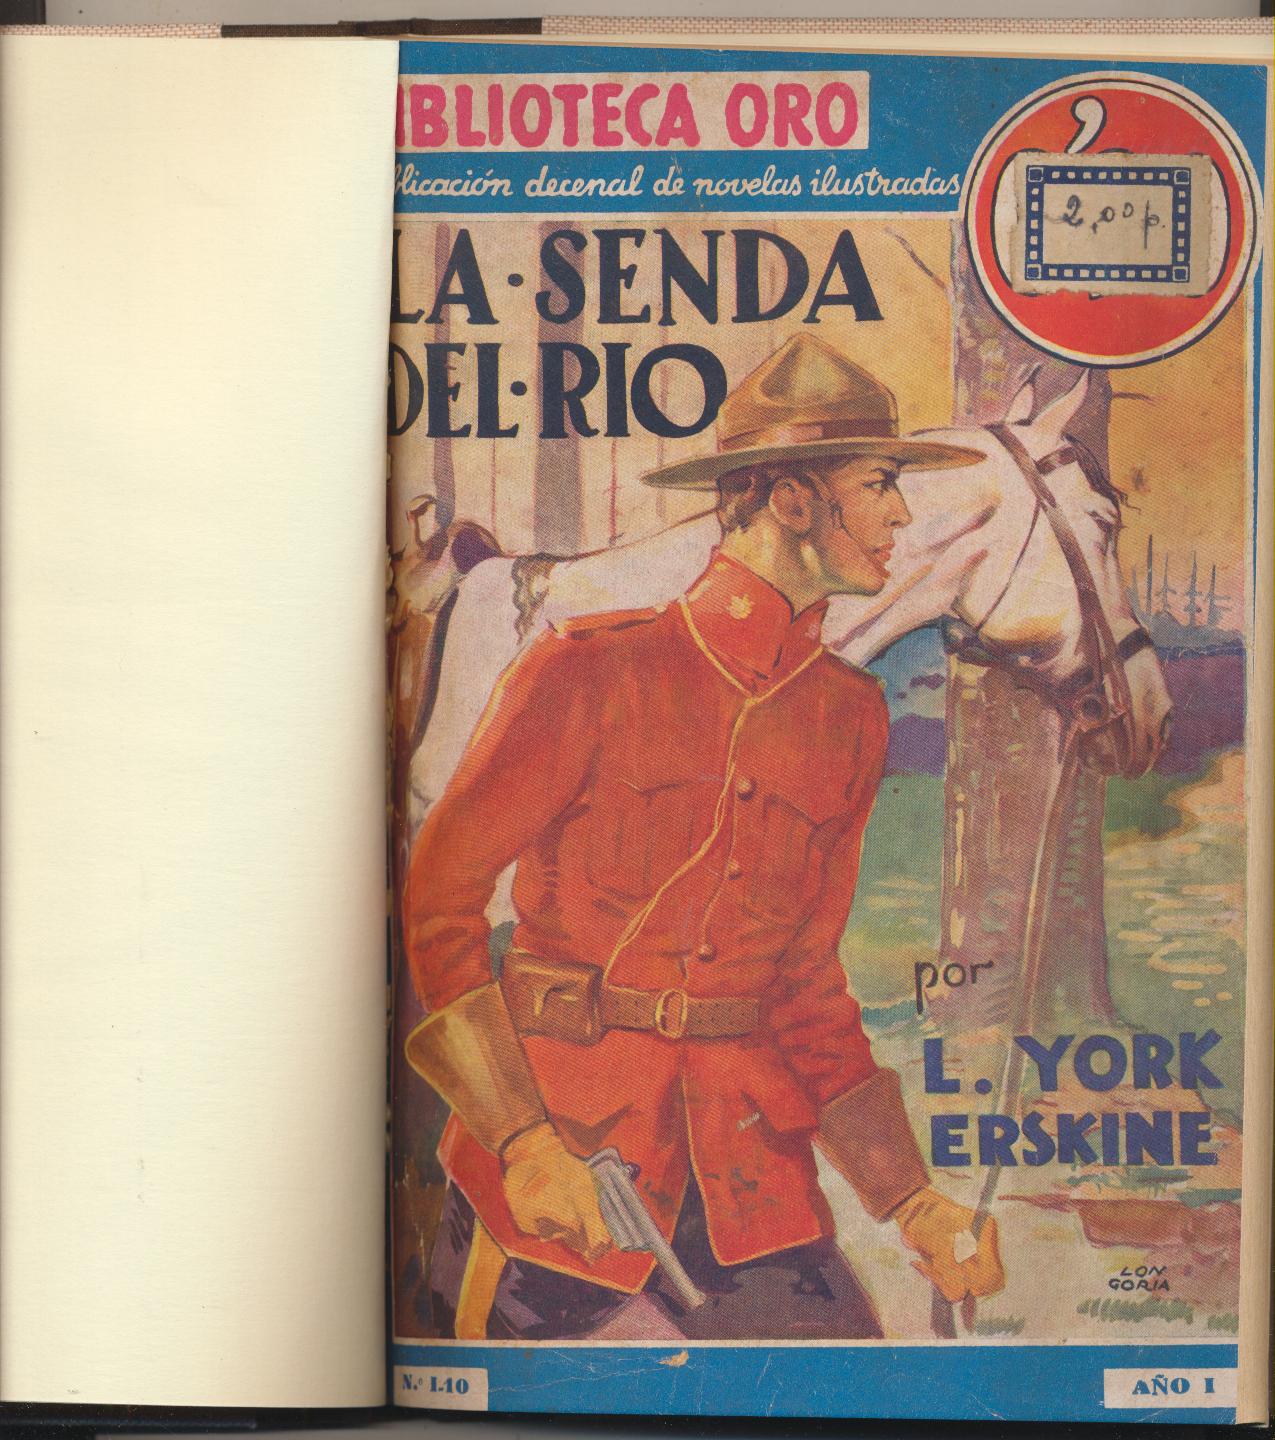 Biblioteca oro nº 10. La Senda del Río por L. York Erskine. 1ª Edición molino 1934